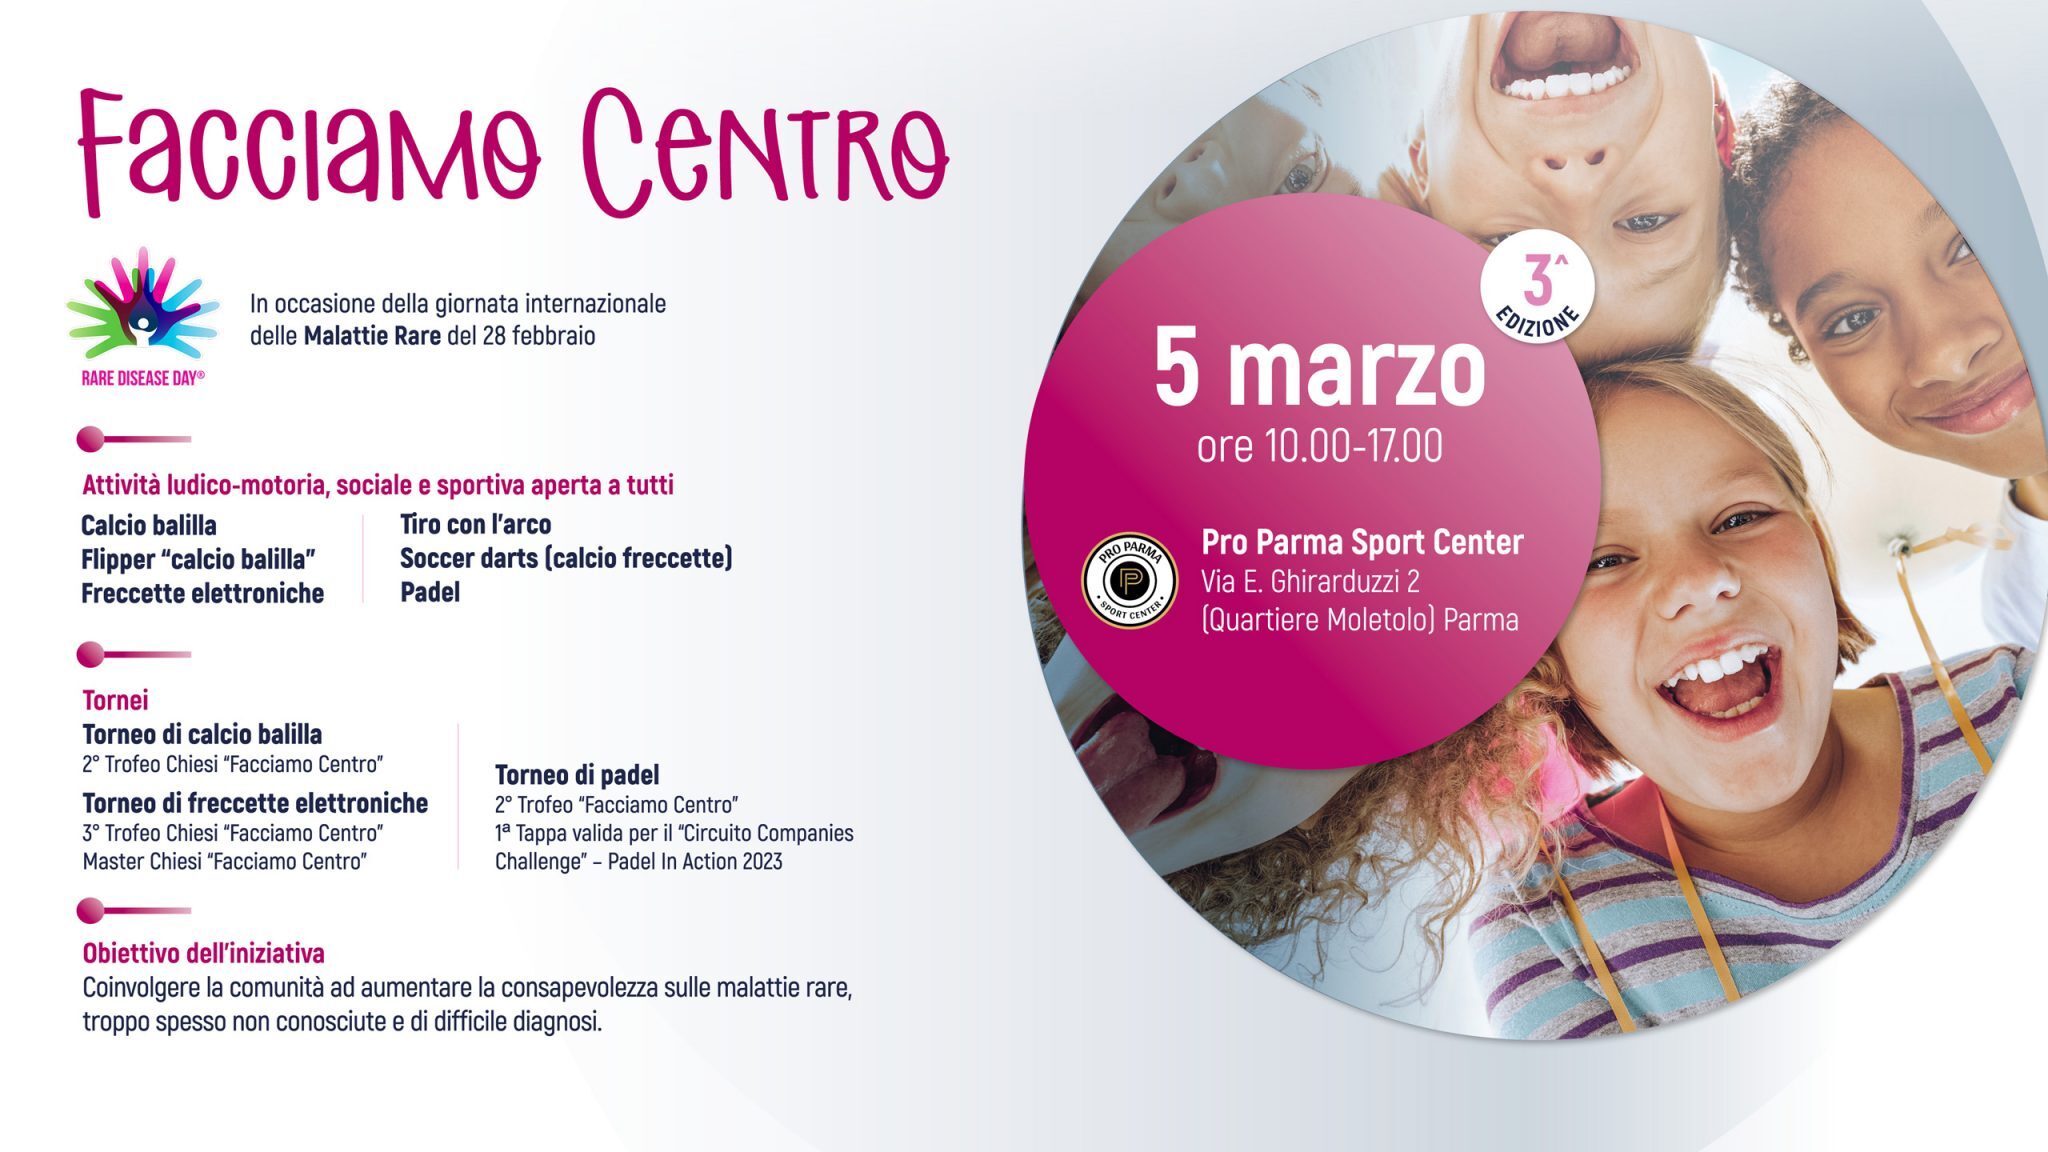 “Facciamo Centro”, evento dedicato alle malattie rare all’insegna dello sport e del divertimento a Parma